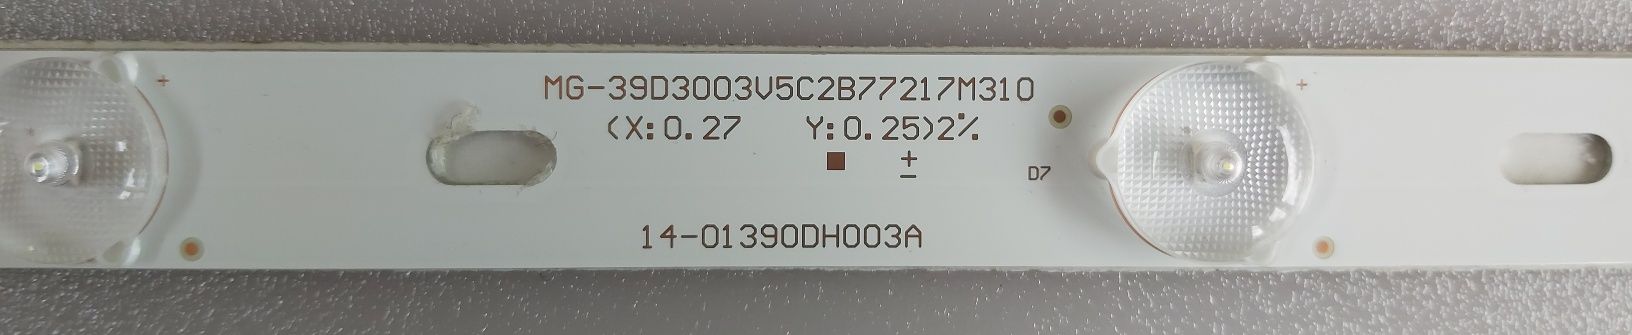 Светодиодни ленти за подсведка  39D3003V5C2B77217M310 MG